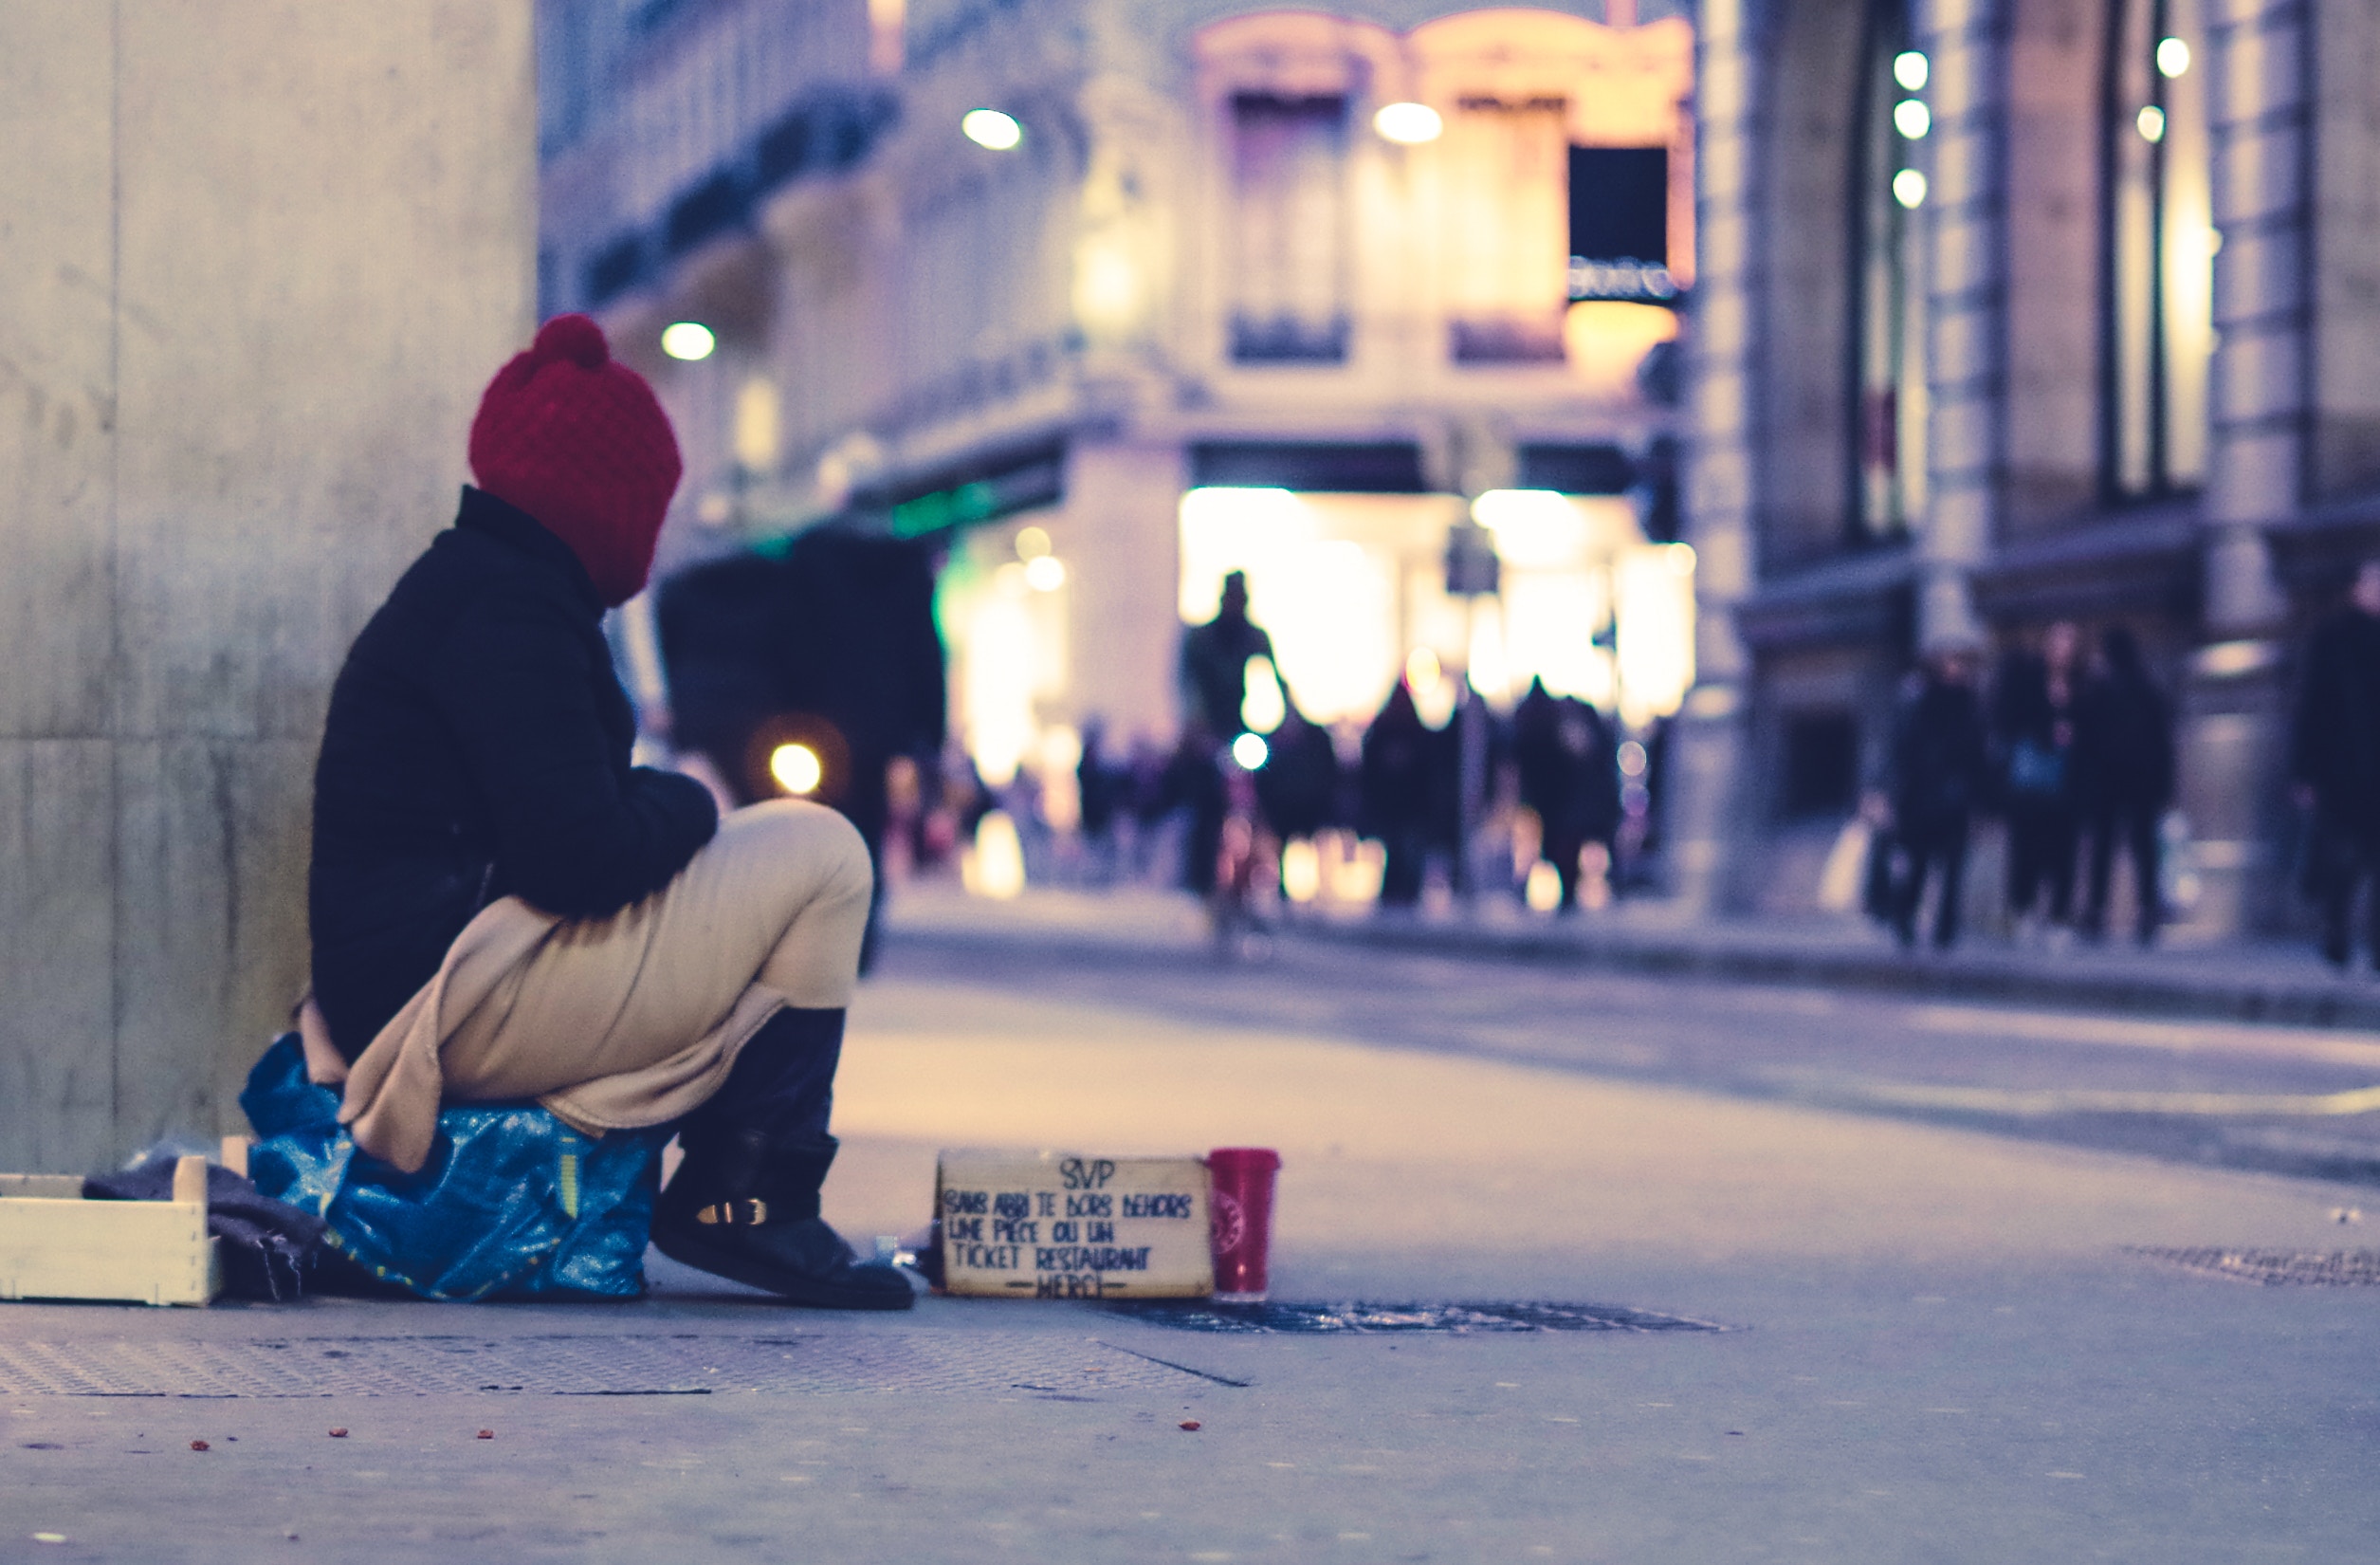 #Ein Winter ohne warmes Zuhause – Wie ihr obdachlosen Menschen helfen könnt